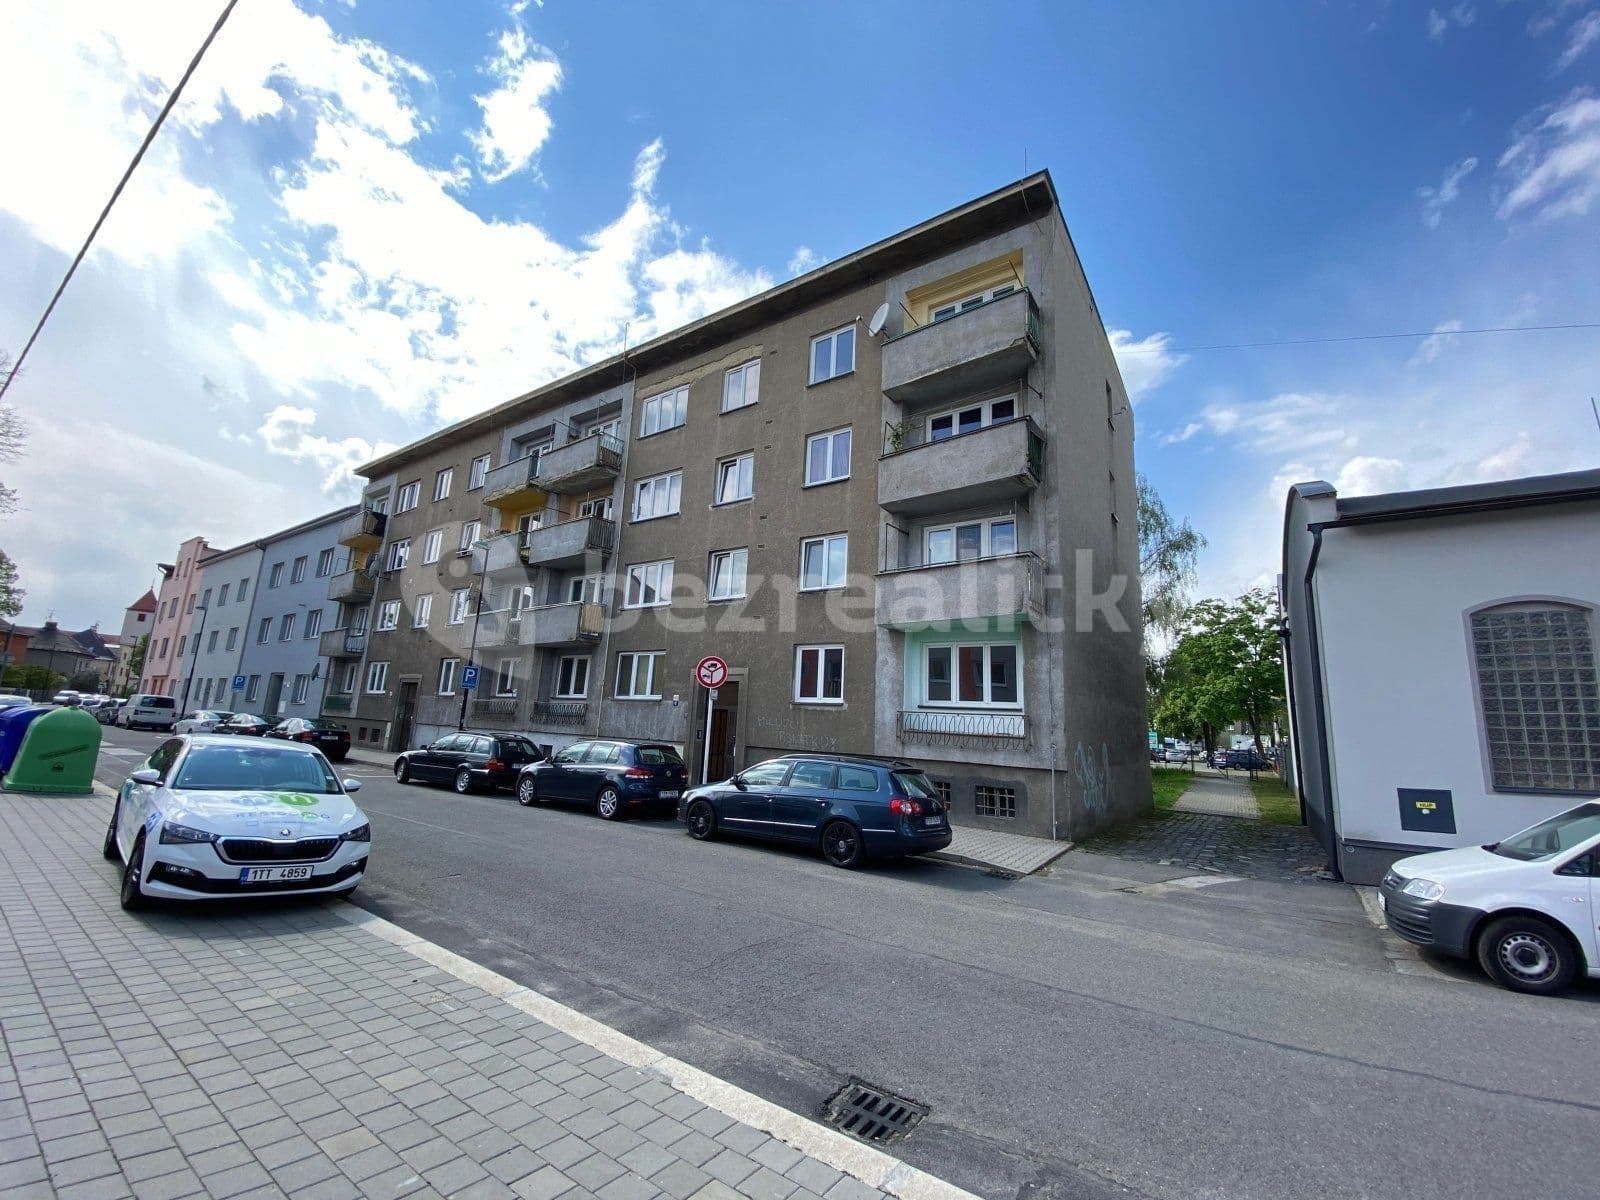 2 bedroom flat to rent, 45 m², Tovární, Ostrava, Moravskoslezský Region